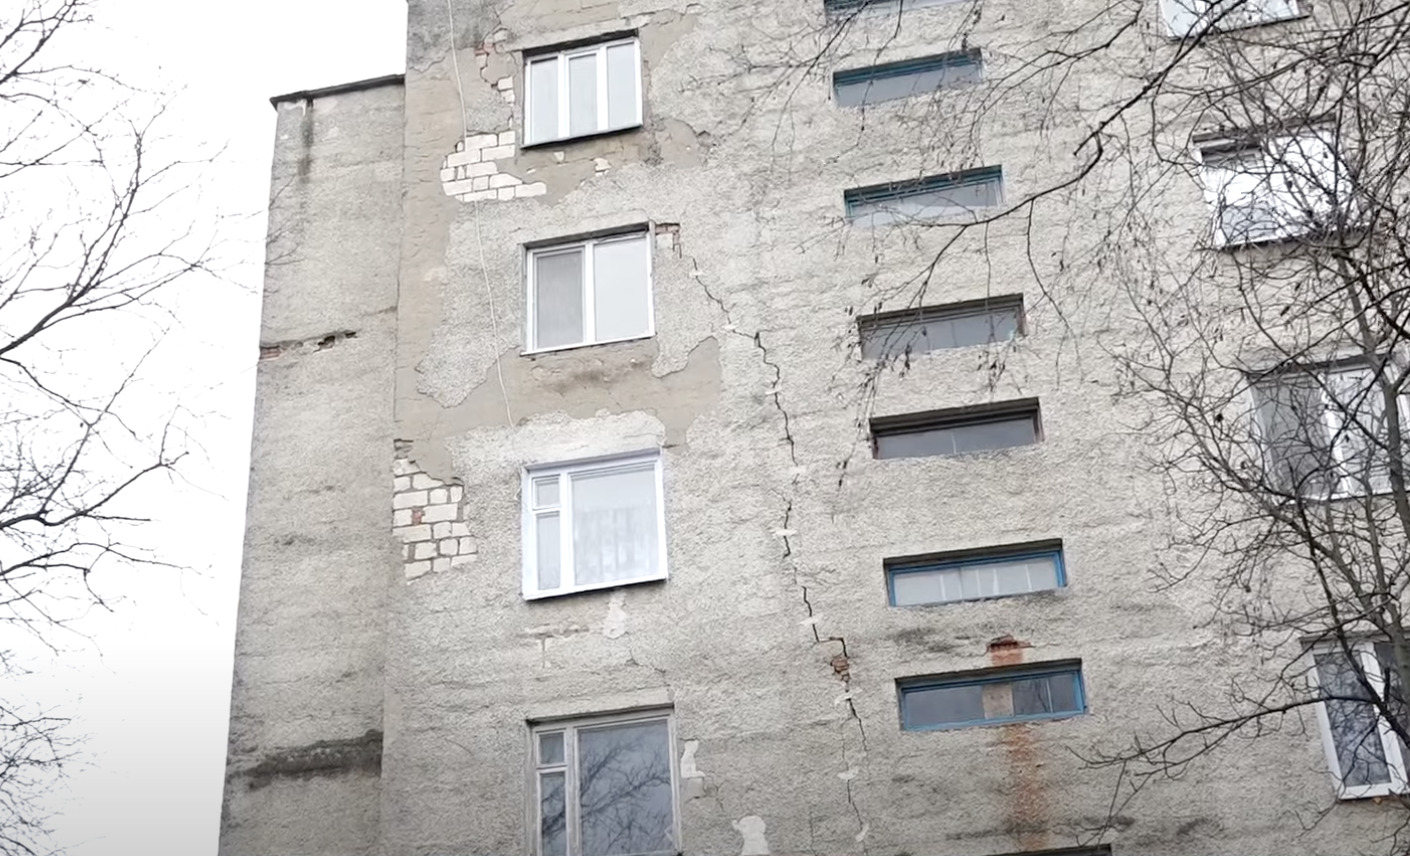 (ФОТО) В Шолданештах пятиэтажный жилой дом находится в аварийном состоянии